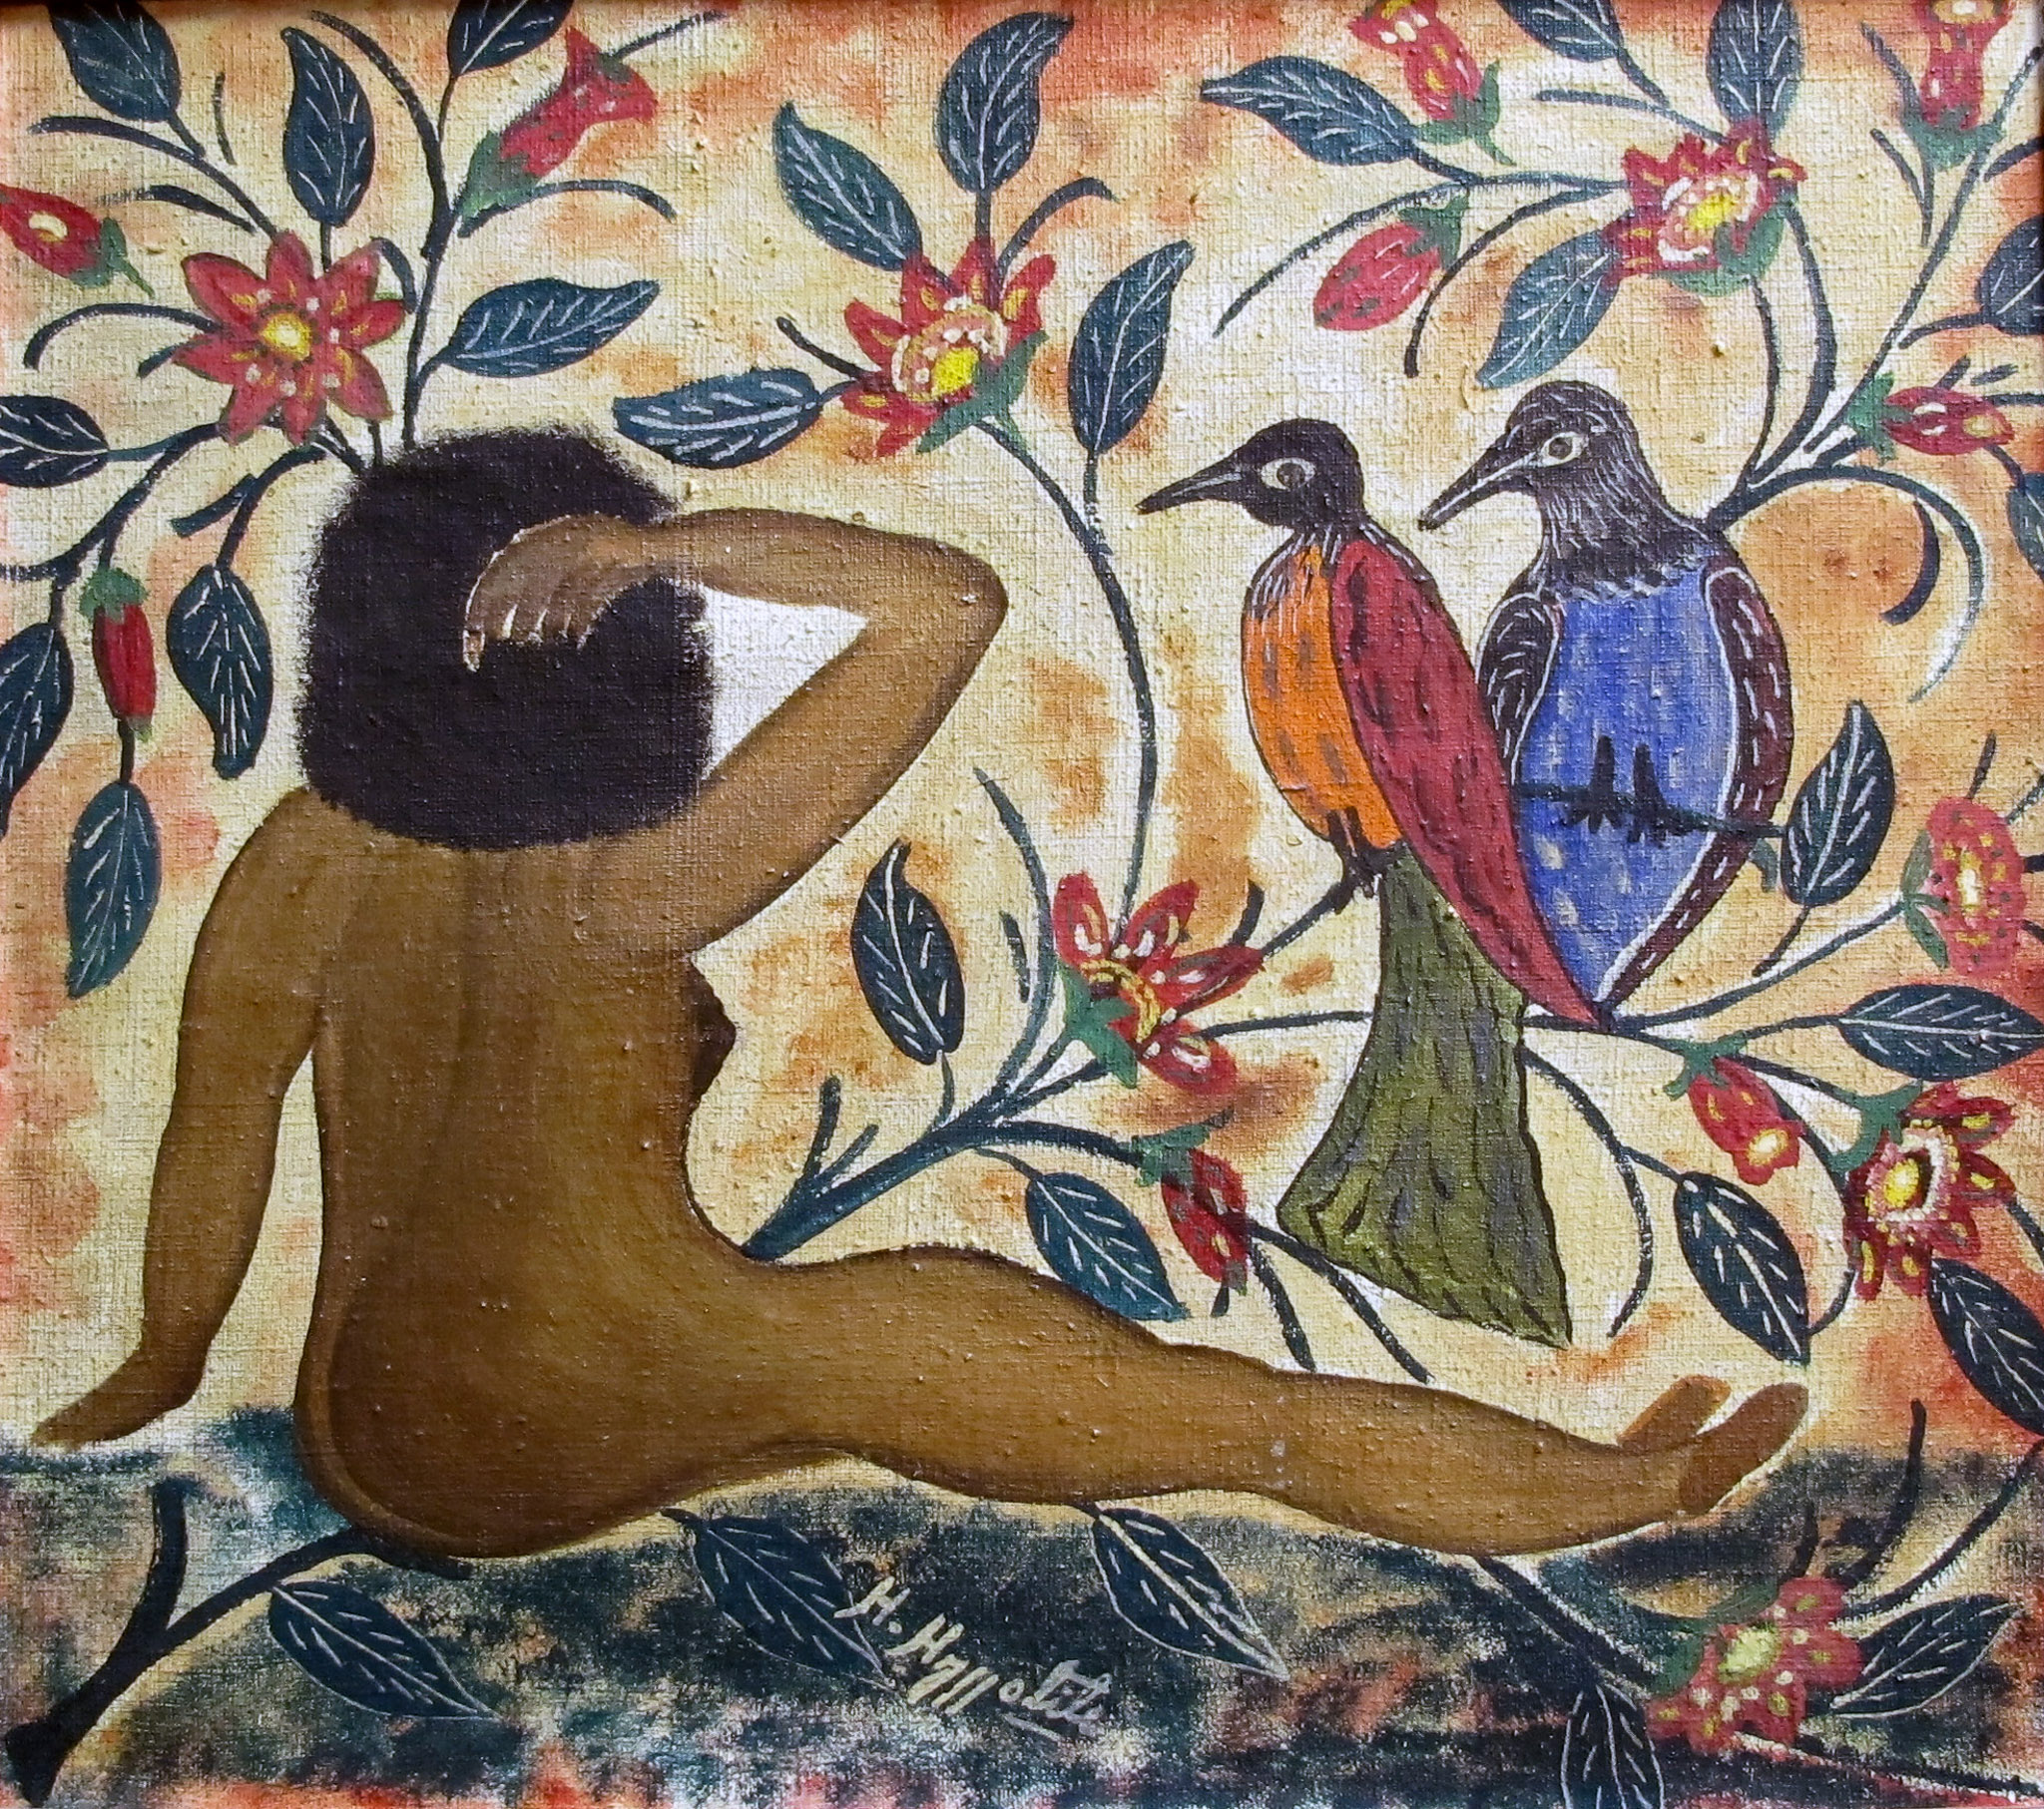 Femme nue avec oiseaux, 1946 